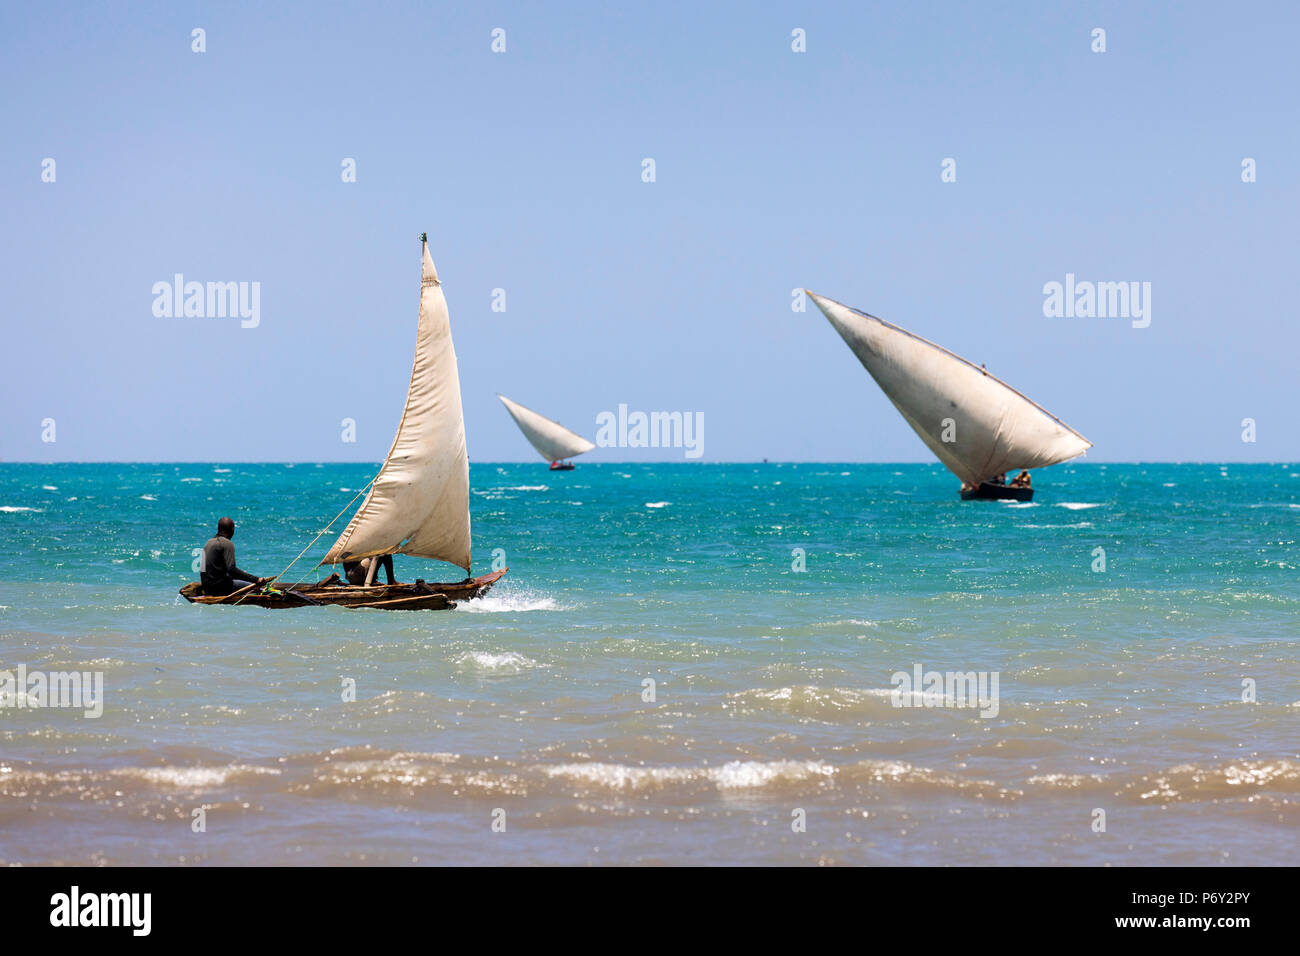 Three small dhows are out fishing near the coast, Zanzibar, Tanzania Stock Photo